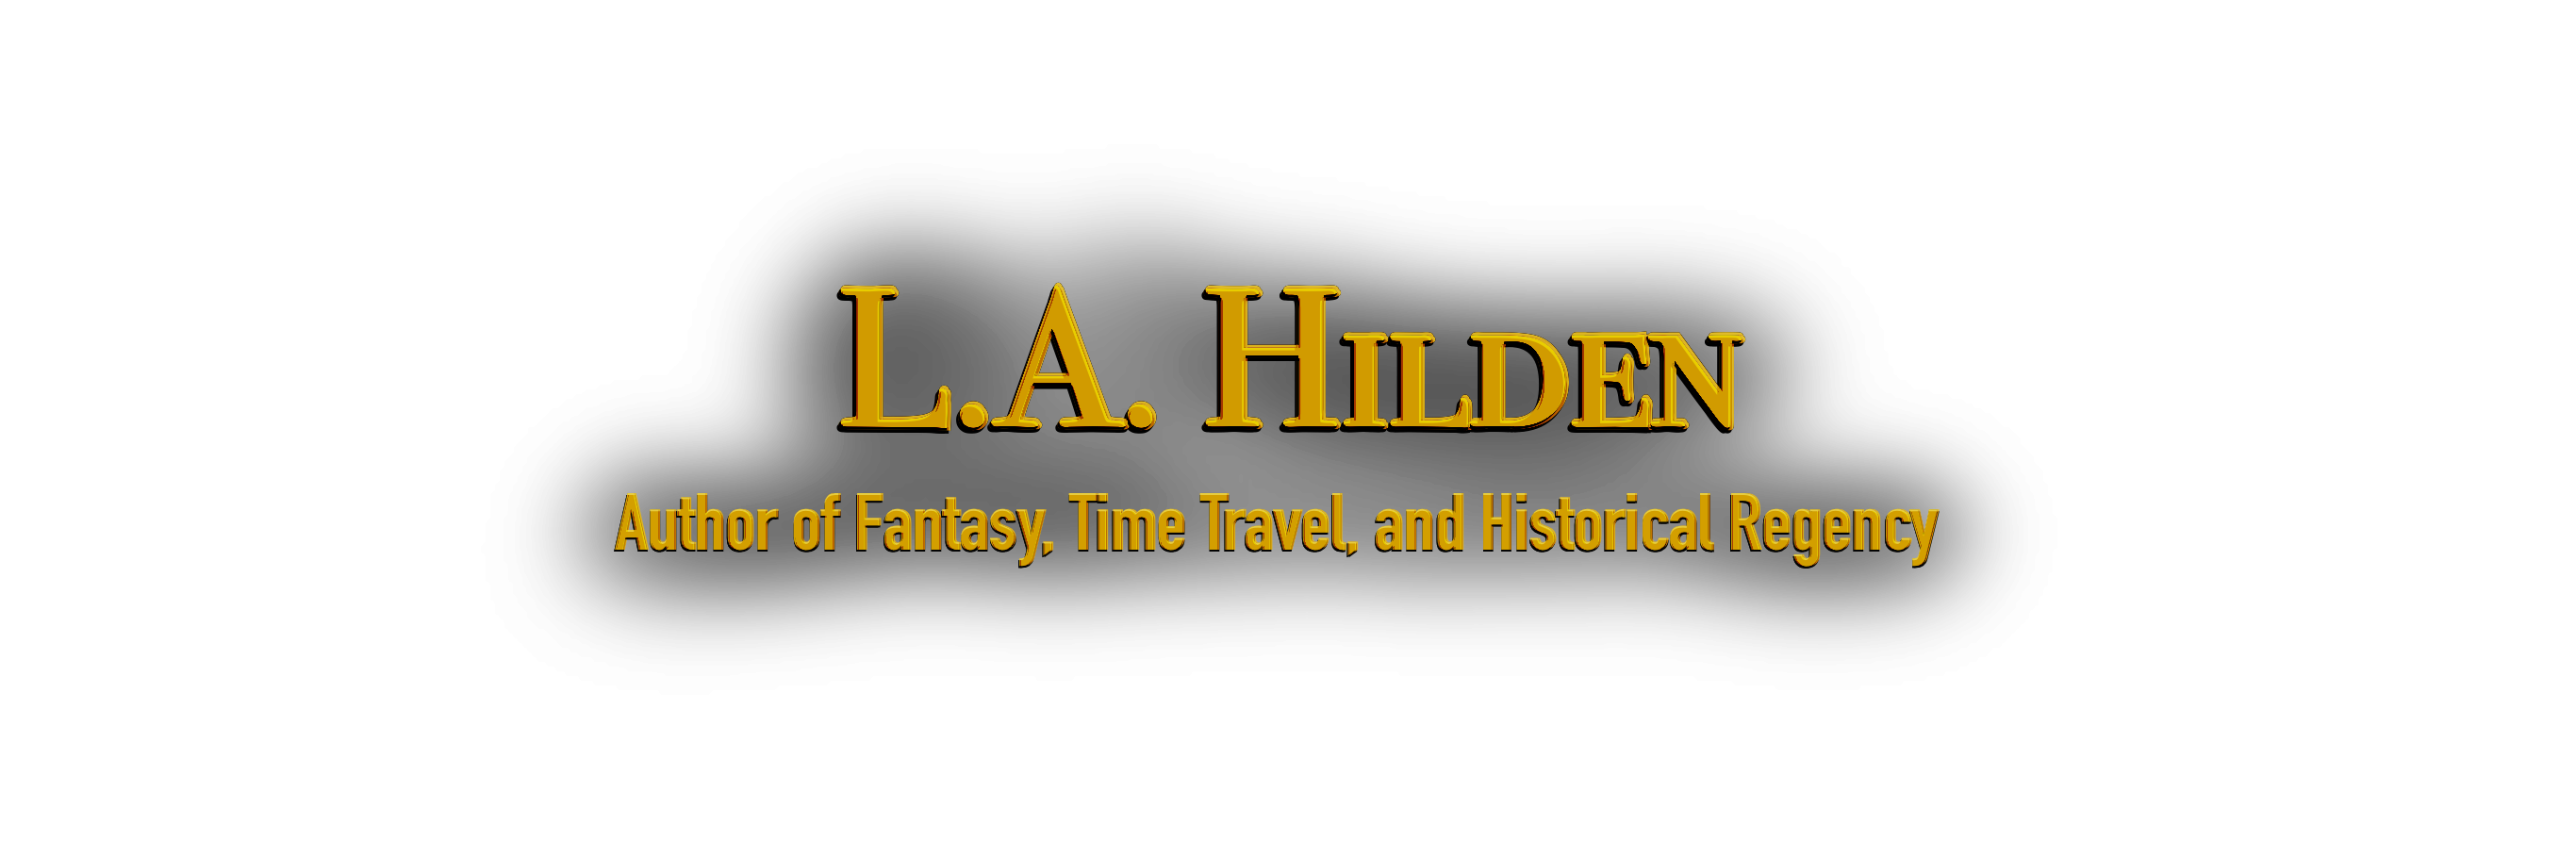 L.A. Hilden